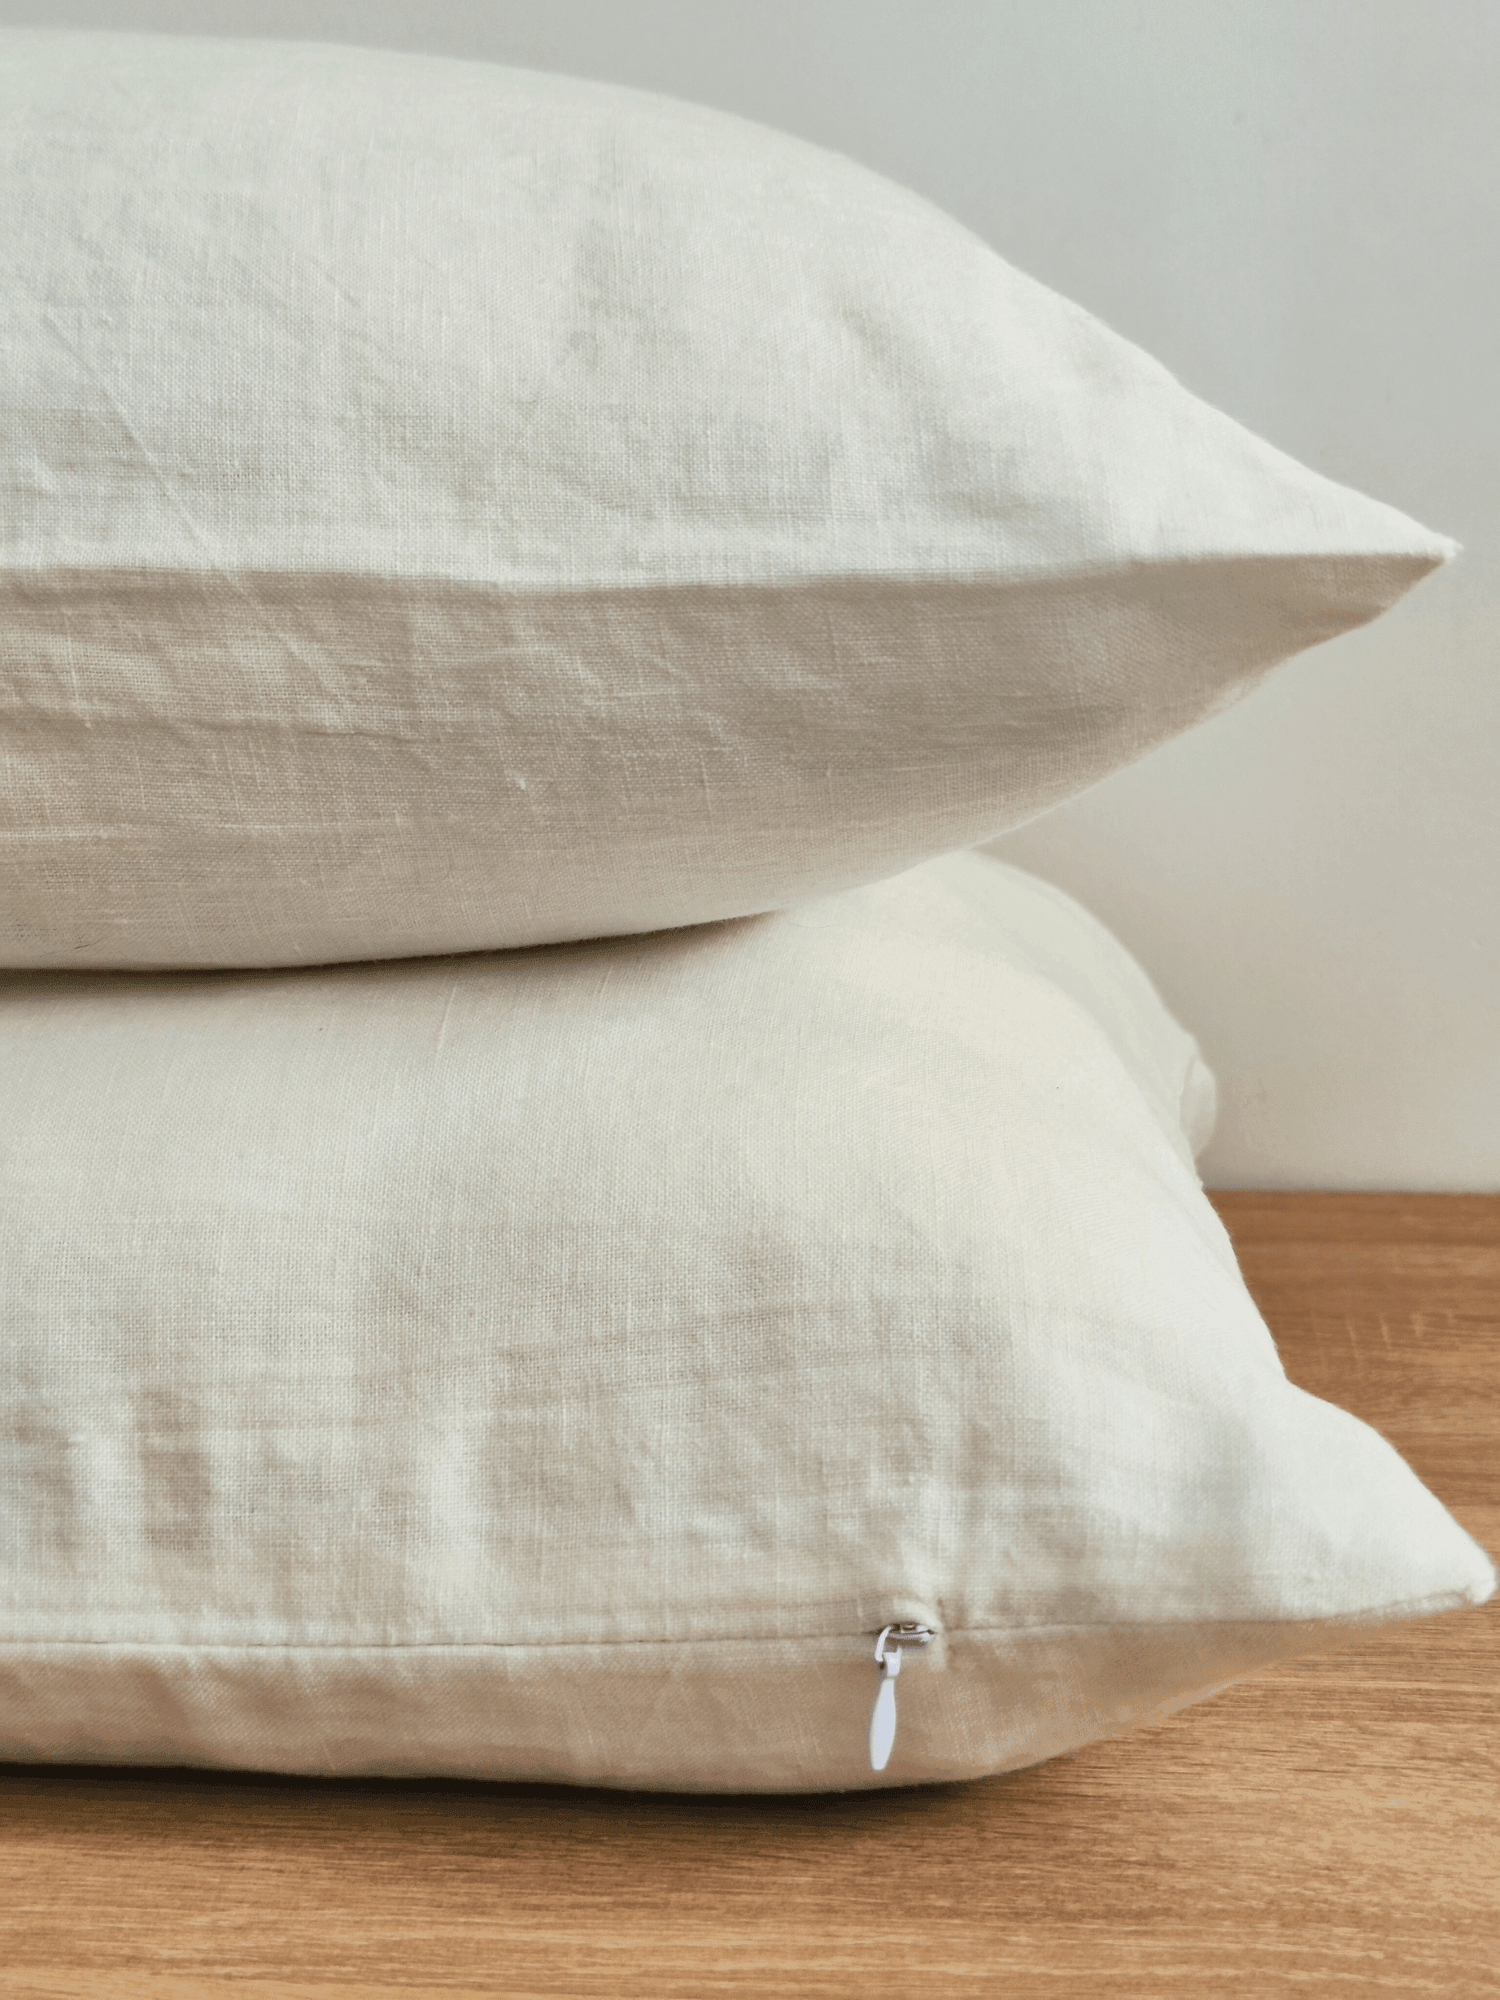 Creame White Linen Pillowcase Set (2 pieces) - Linen pillowcase, Pillowcase set - FlaxLin Eco Textiles